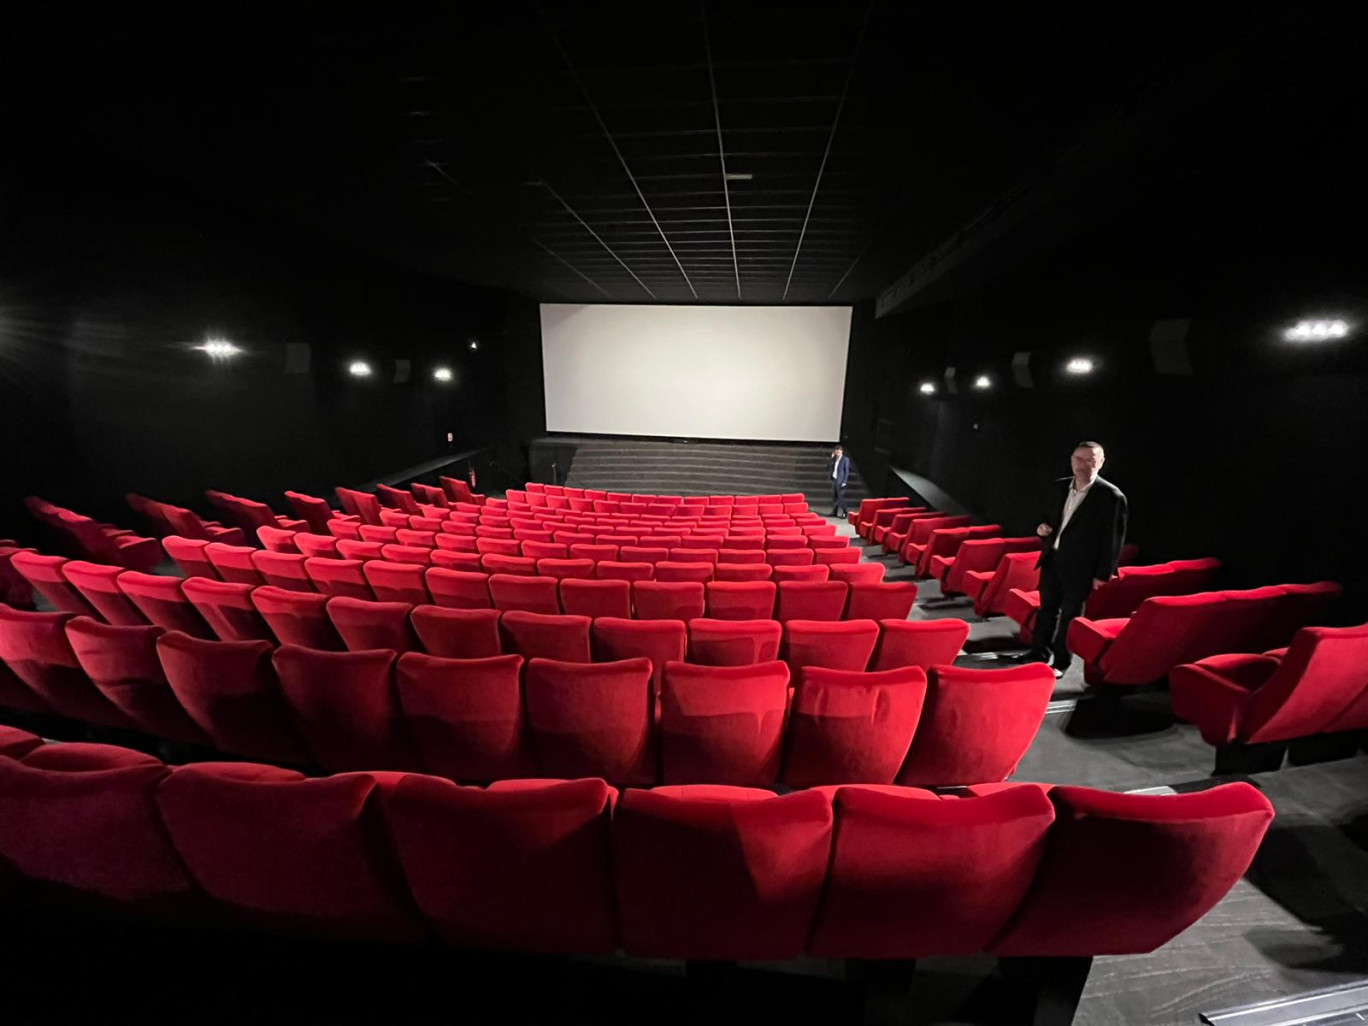 Le cinéma compte désormais 8 salles, soit 1212 places. (Photo Gazette Normandie)